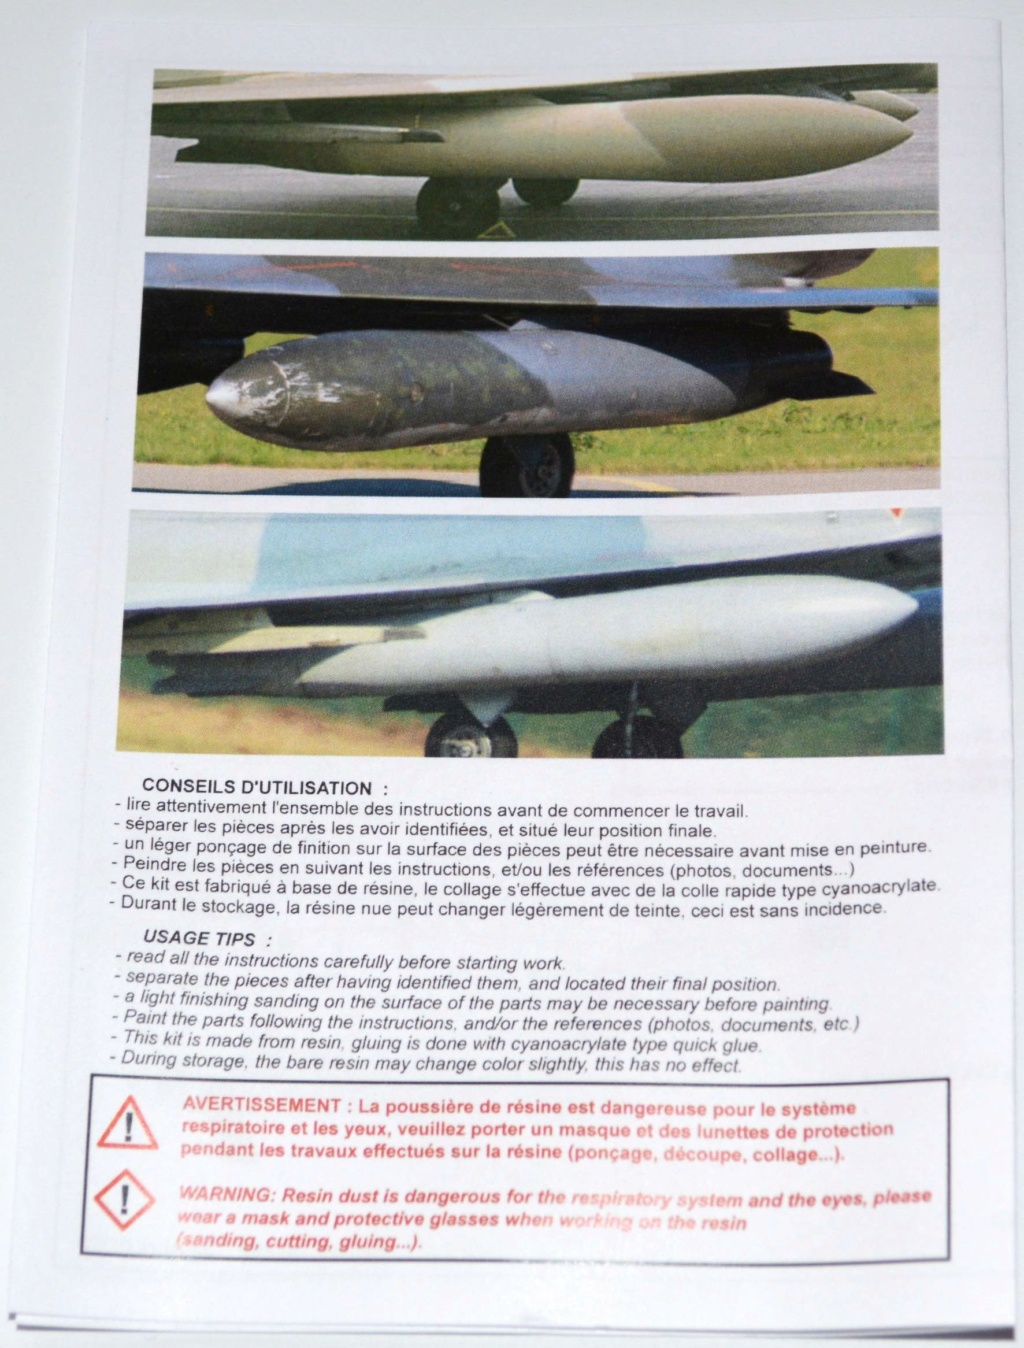 Syhart accessories A002 2x réservoirs 2000L pour Mirage 2000 Dsc_1137